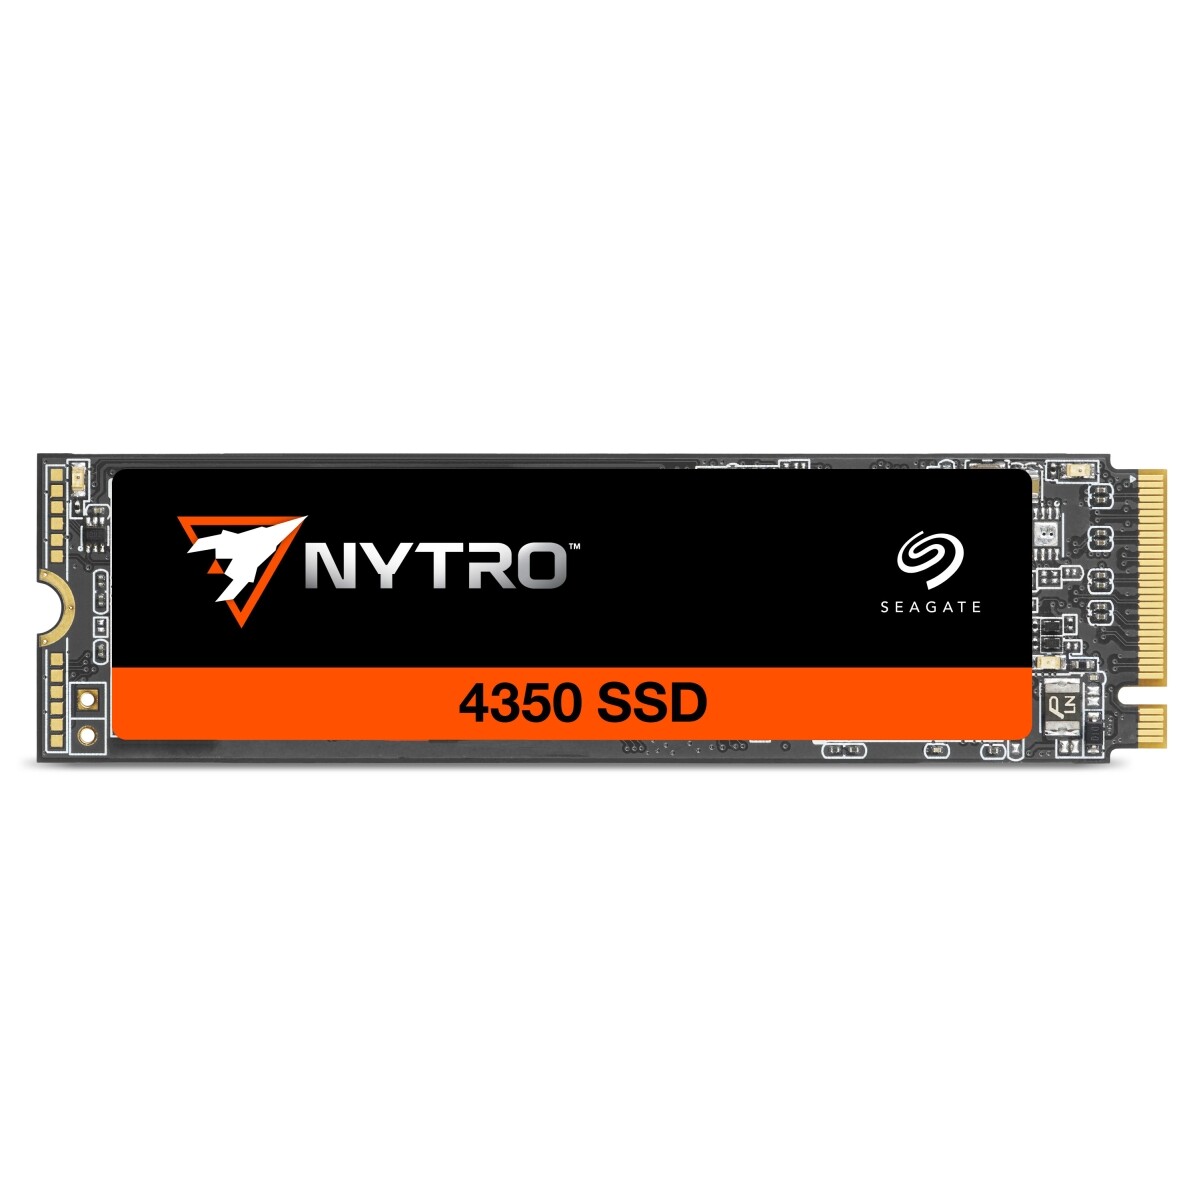 Seagate anunció el nuevo Nytro 4350 NVMe